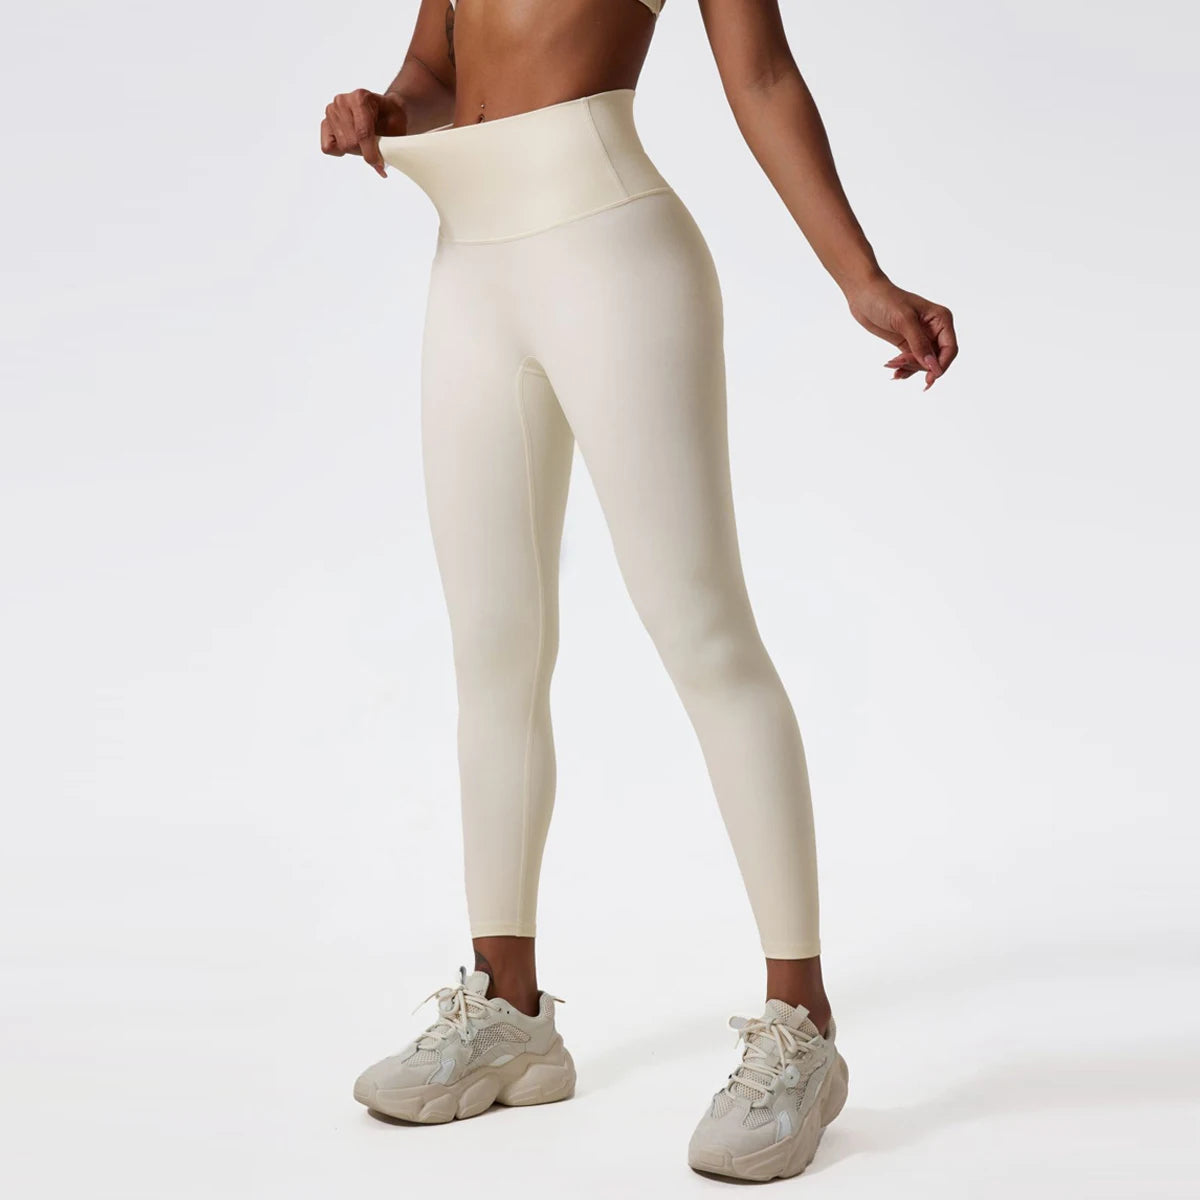 Virtuous leggins – Fitness Woman